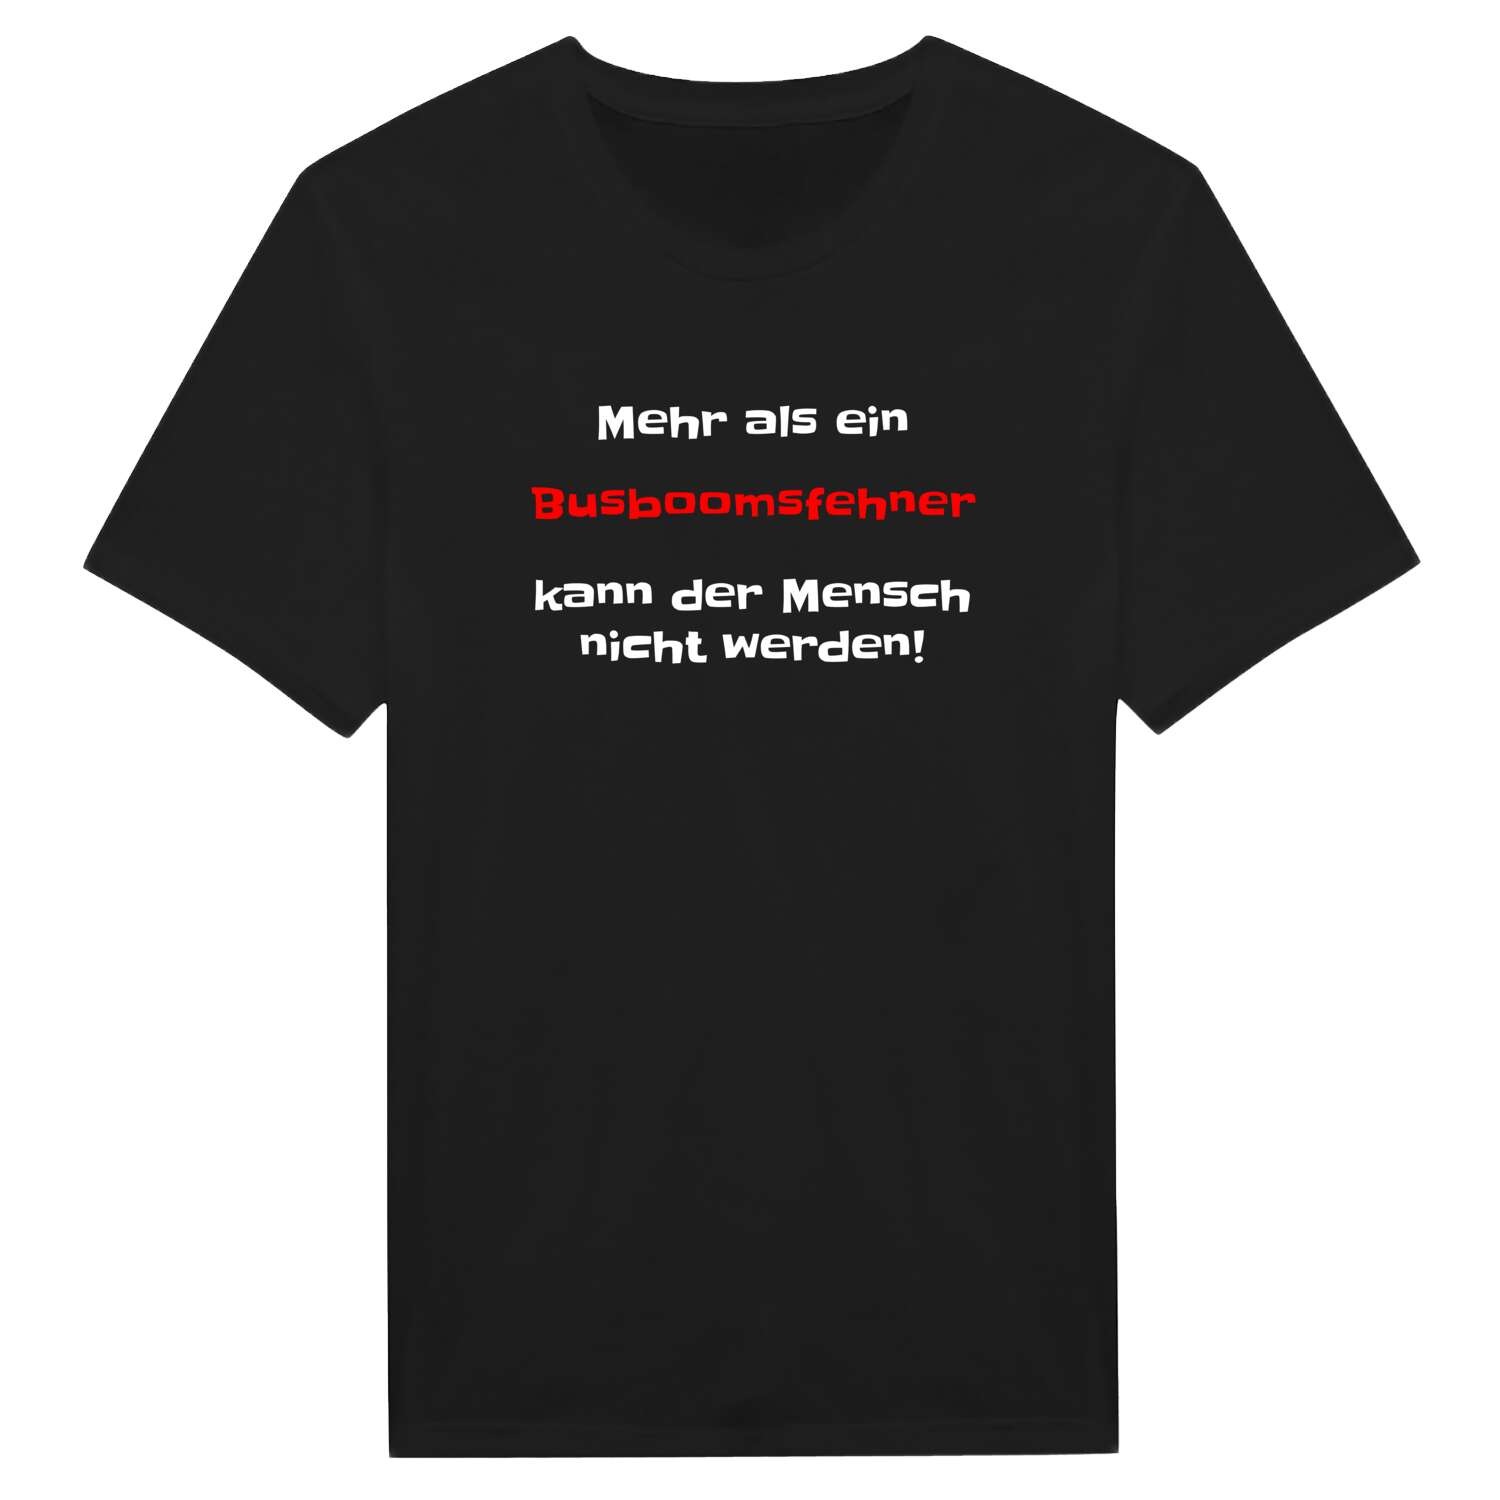 Busboomsfehn T-Shirt »Mehr als ein«